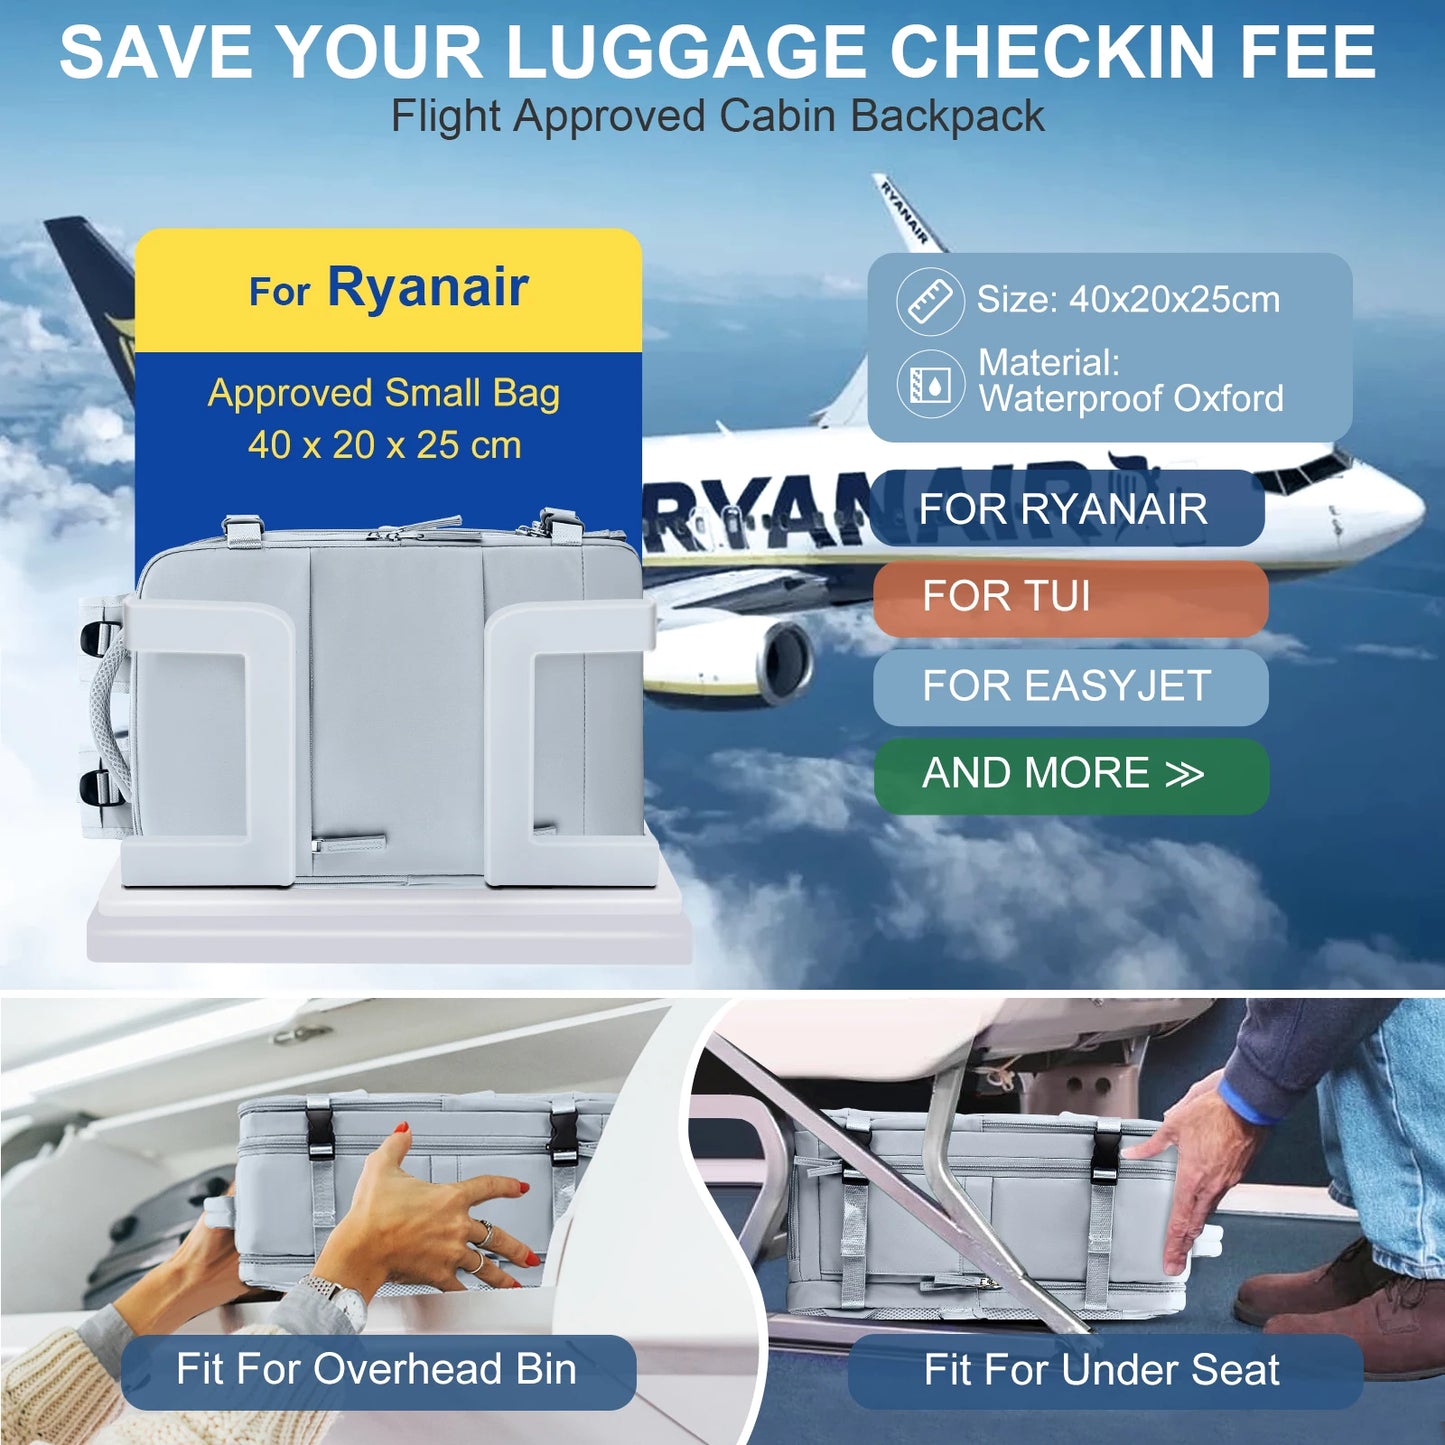 Rygsæk 40x20x25 Ryanair, rejse rygsæk til kvindelige mænd, personlig vare viderefører rygsæk, forretningsweekender bærbar rygsæk